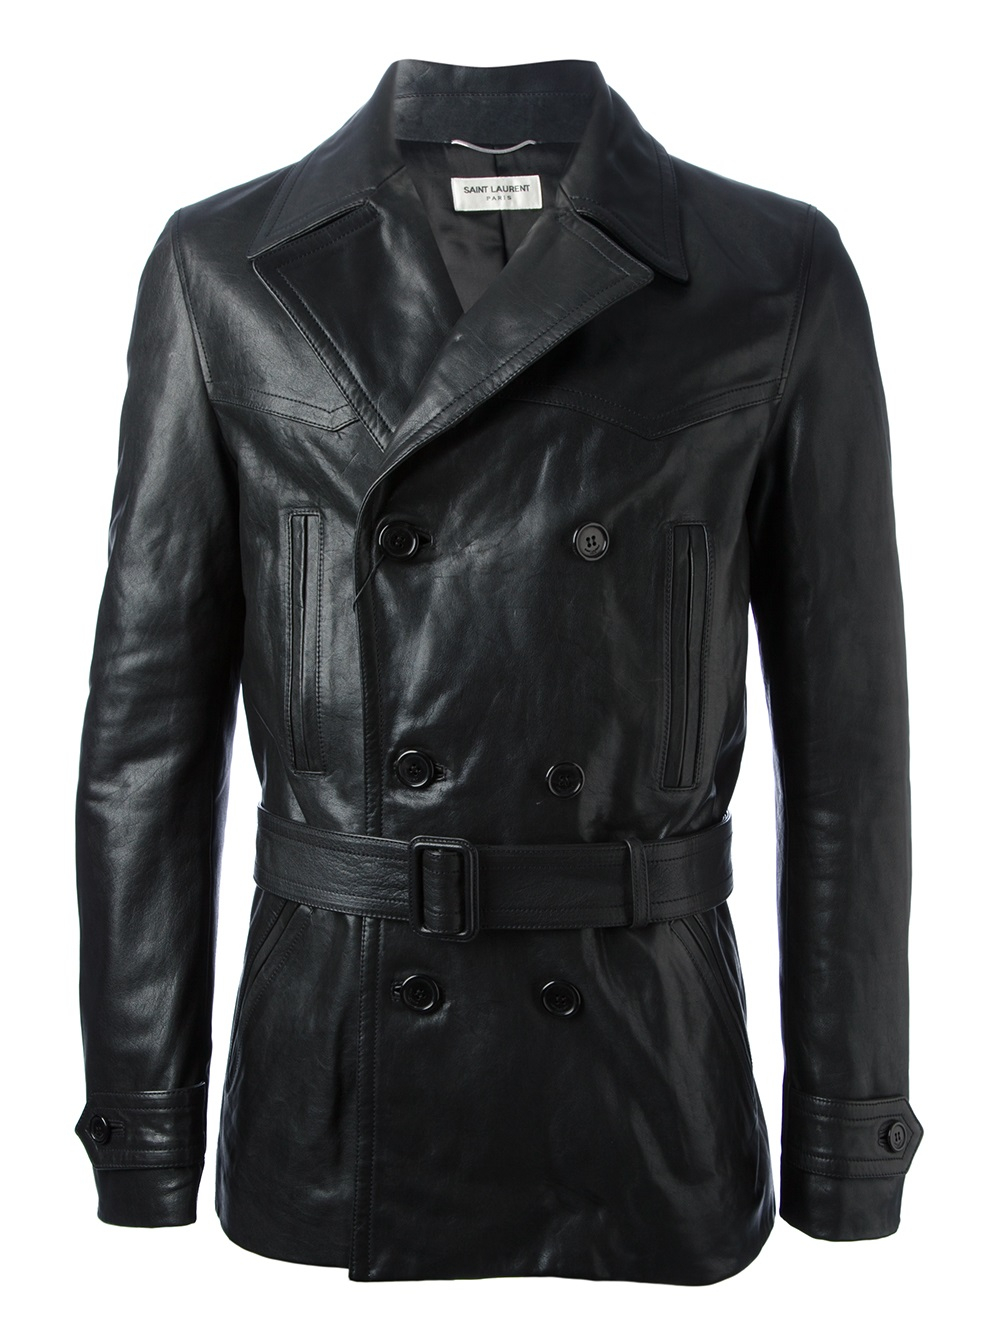 Saint Laurent Belted Leather Jacket in Black for Men - Lyst